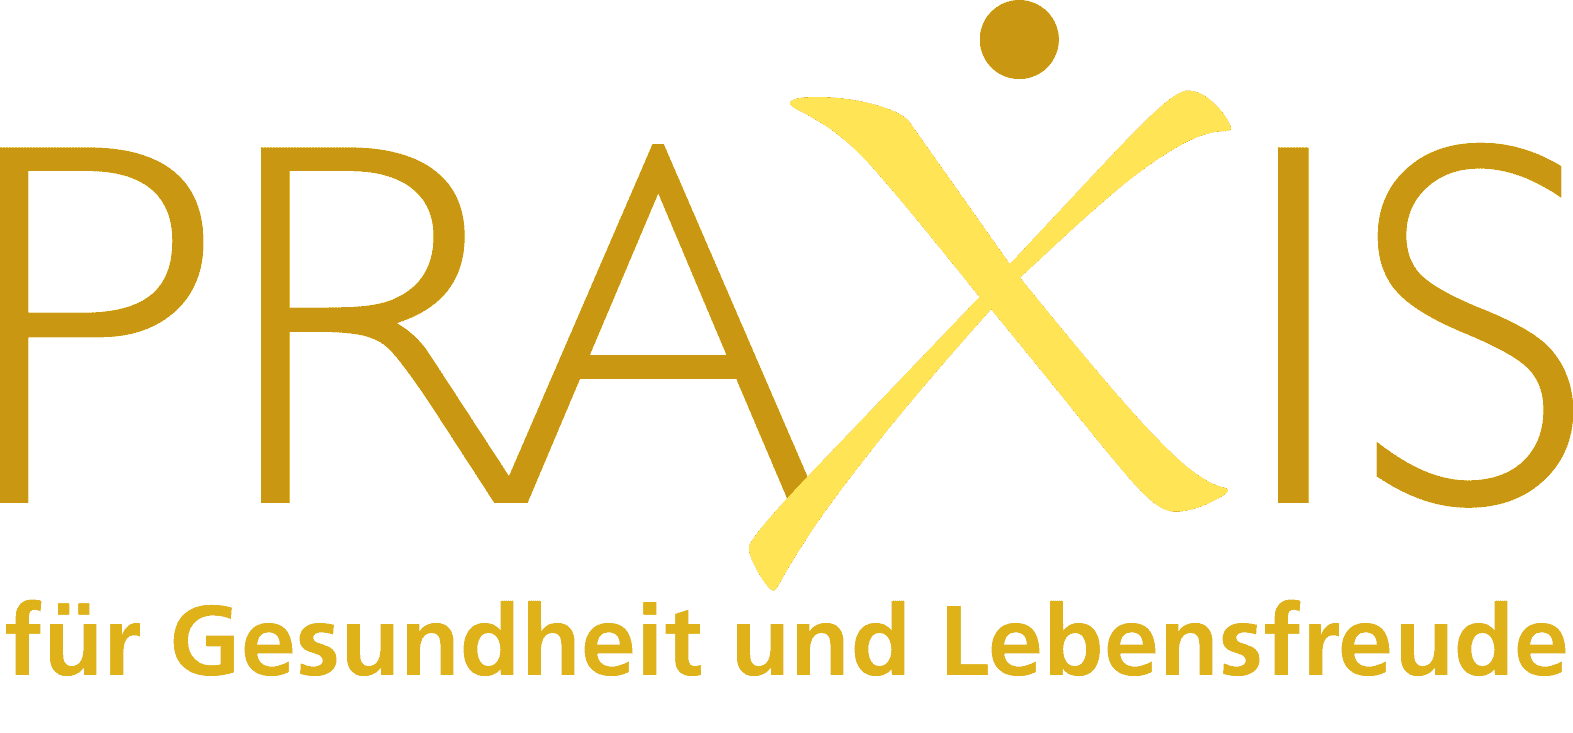 Logo der Praxis für Gesundheit und Lebensfreude, Meggen, Luzern, Schweiz